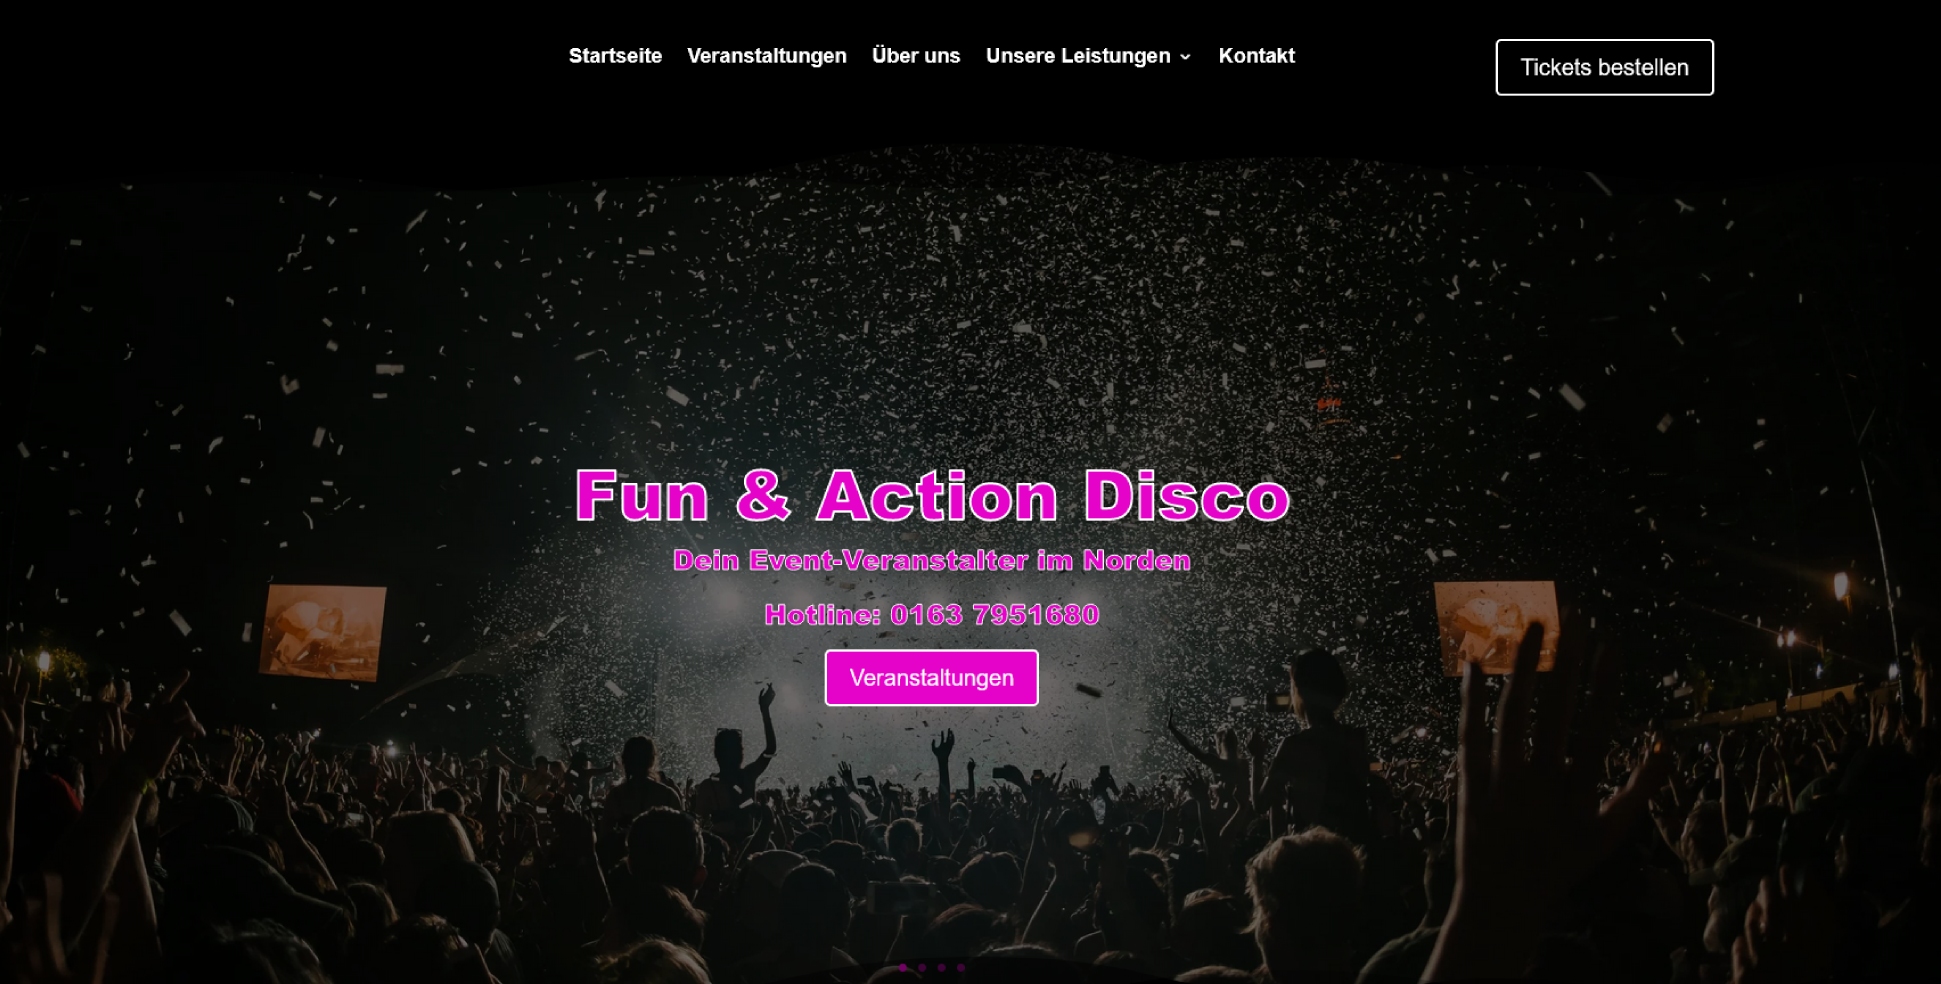 Website: Fun & Action Disco